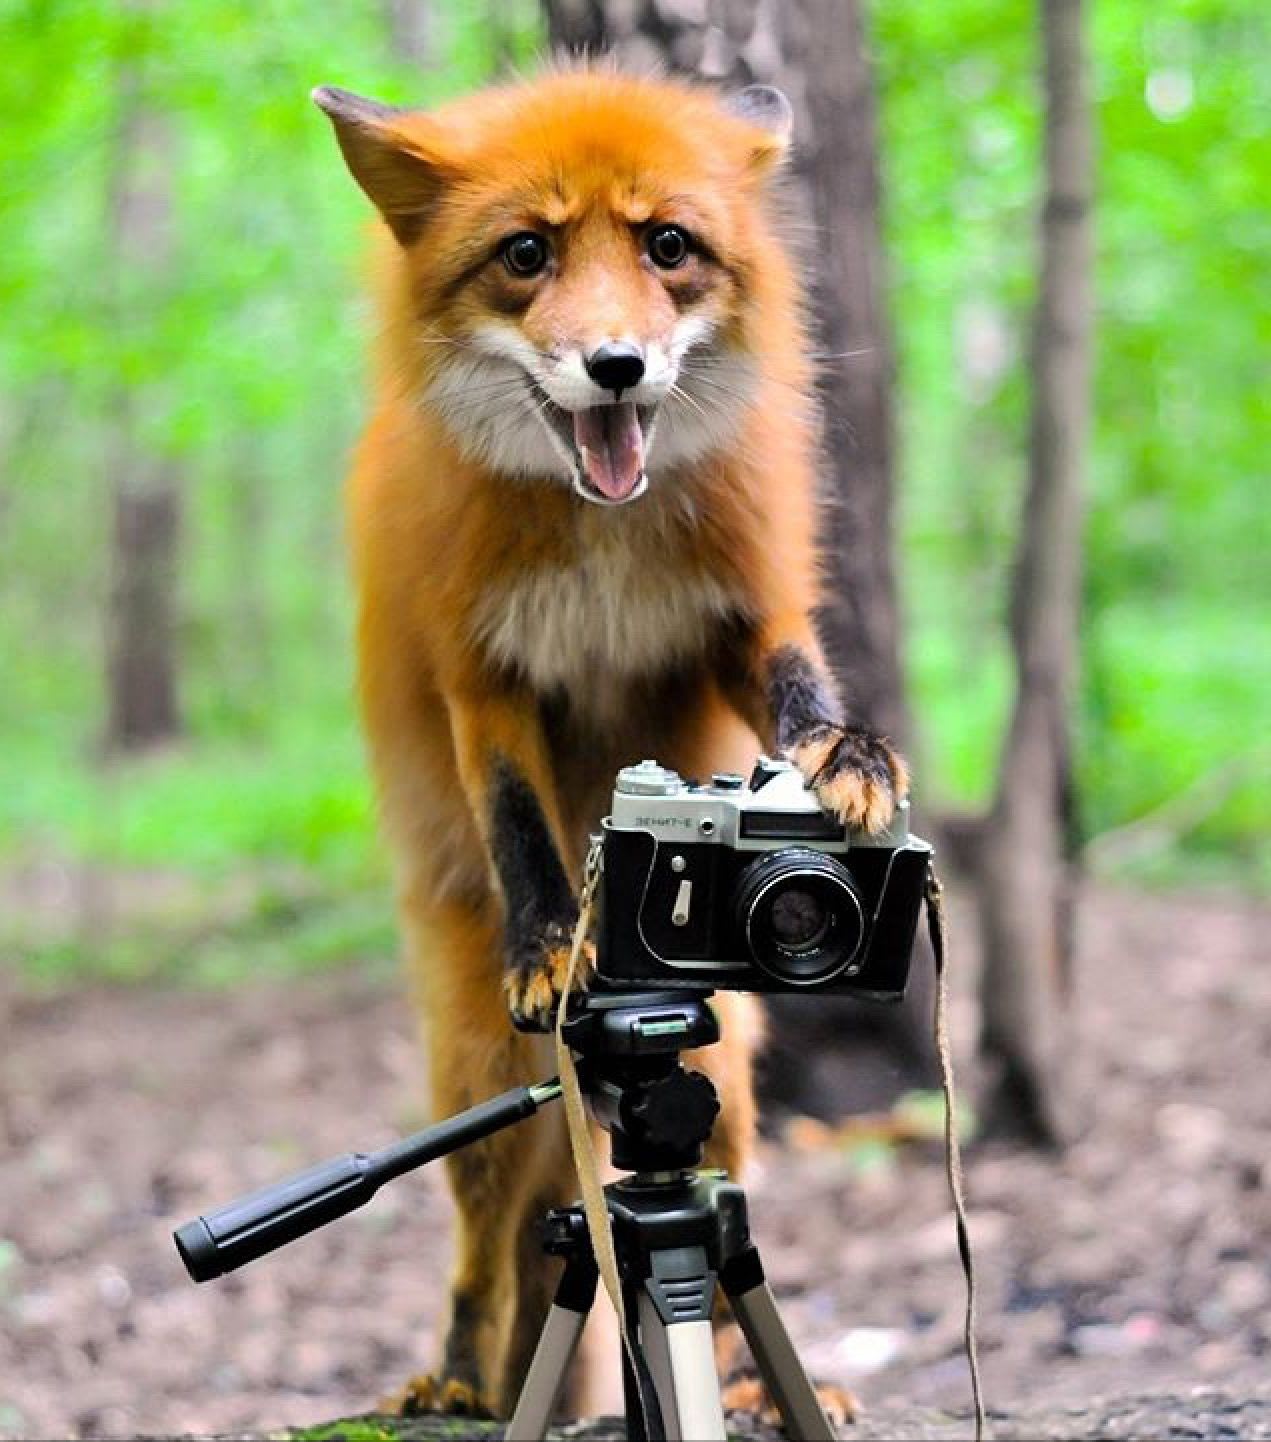 A foxtographer